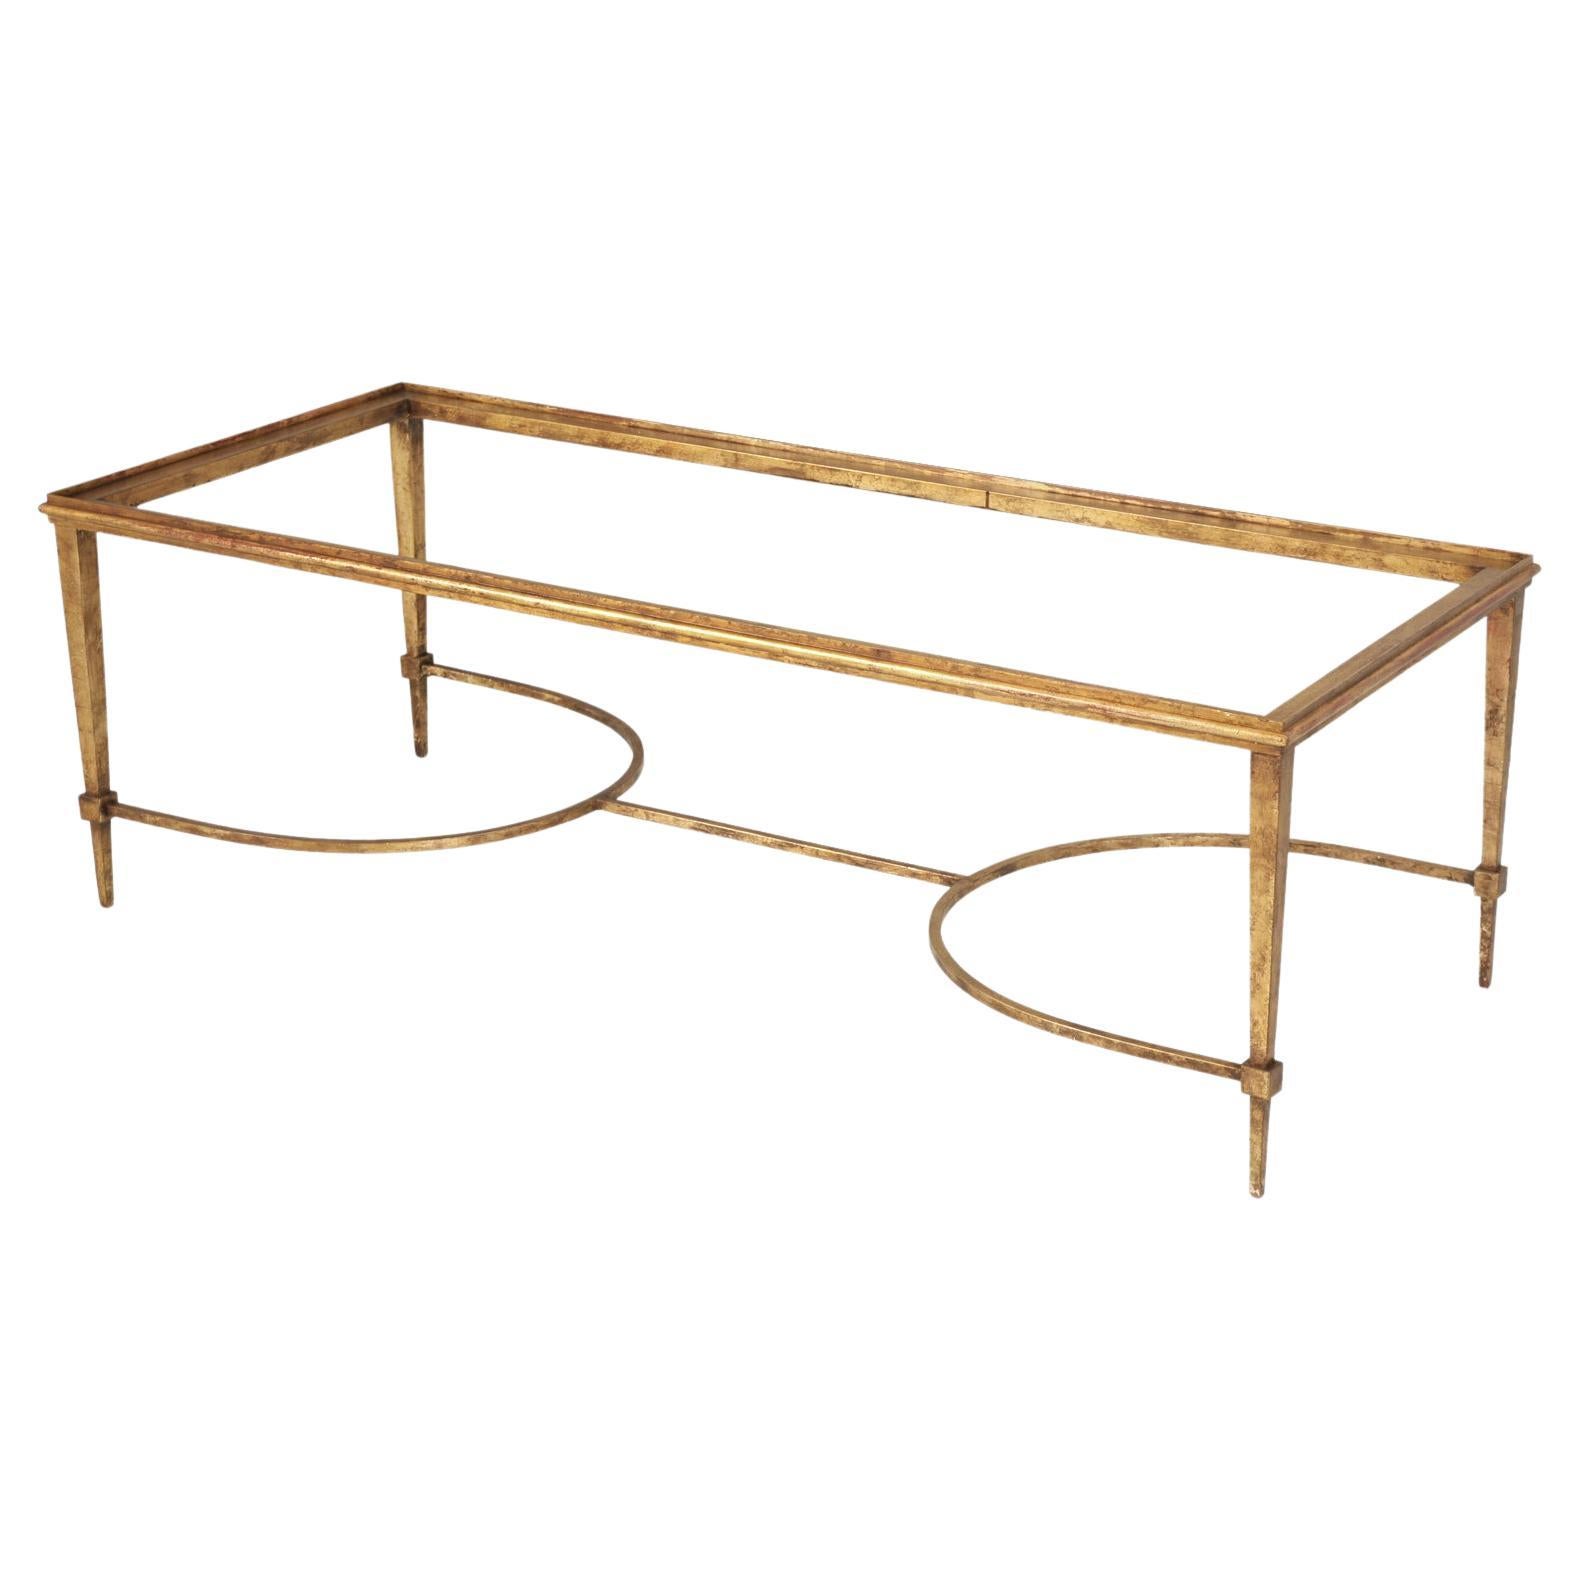 Table basse en fer doré d'inspiration Maison Ramsey, fabriquée à la main sur commande au niveau local en vente